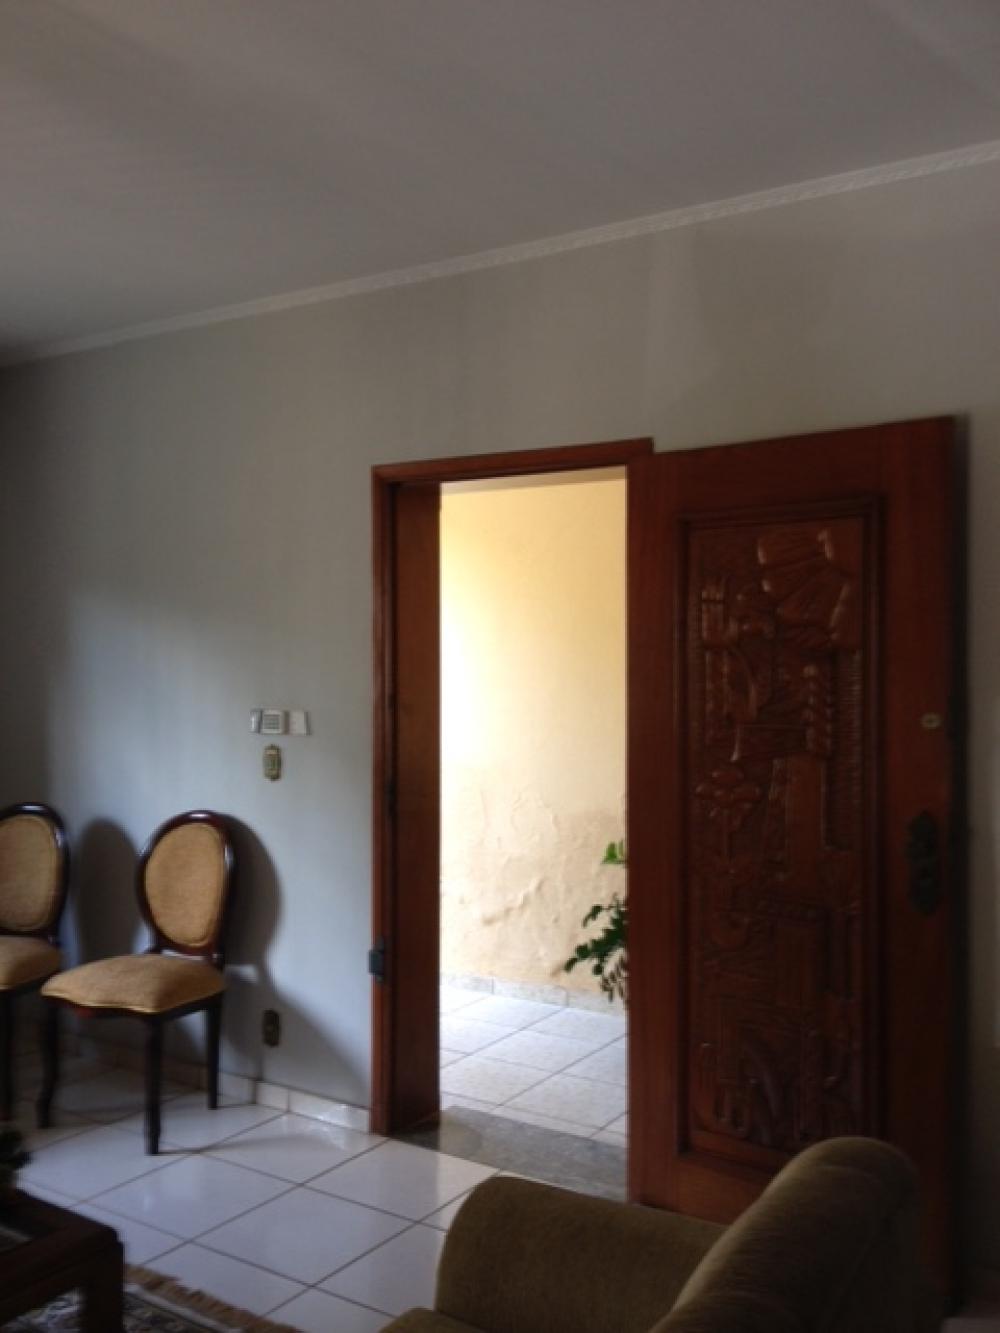 Comprar Casa / Padrão em São José do Rio Preto apenas R$ 800.000,00 - Foto 3